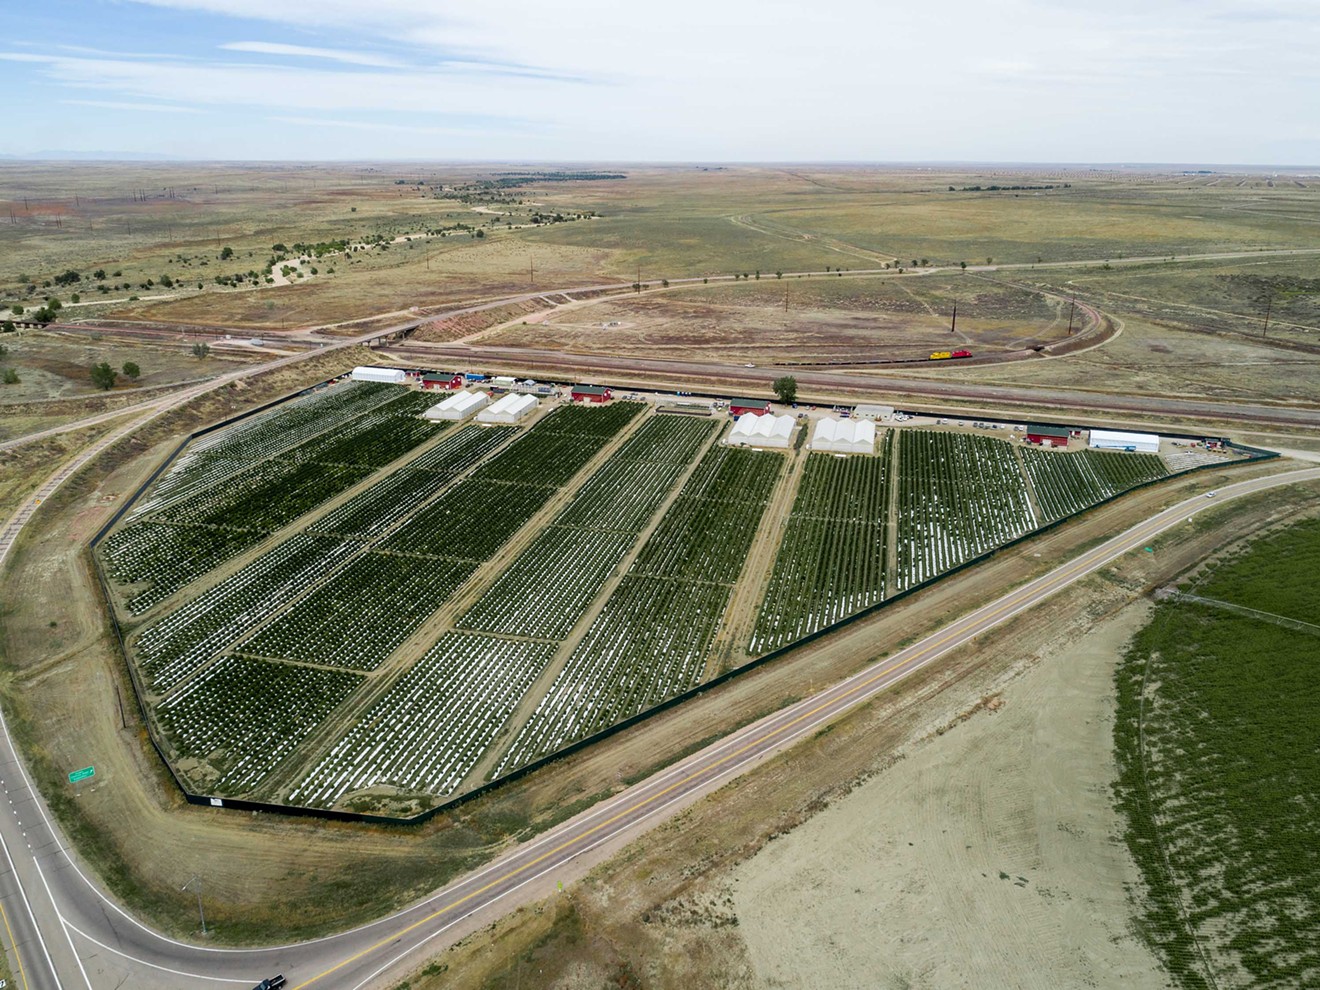 Los Sueños Farms grows commercial marijuana on over 36 acres in Pueblo.